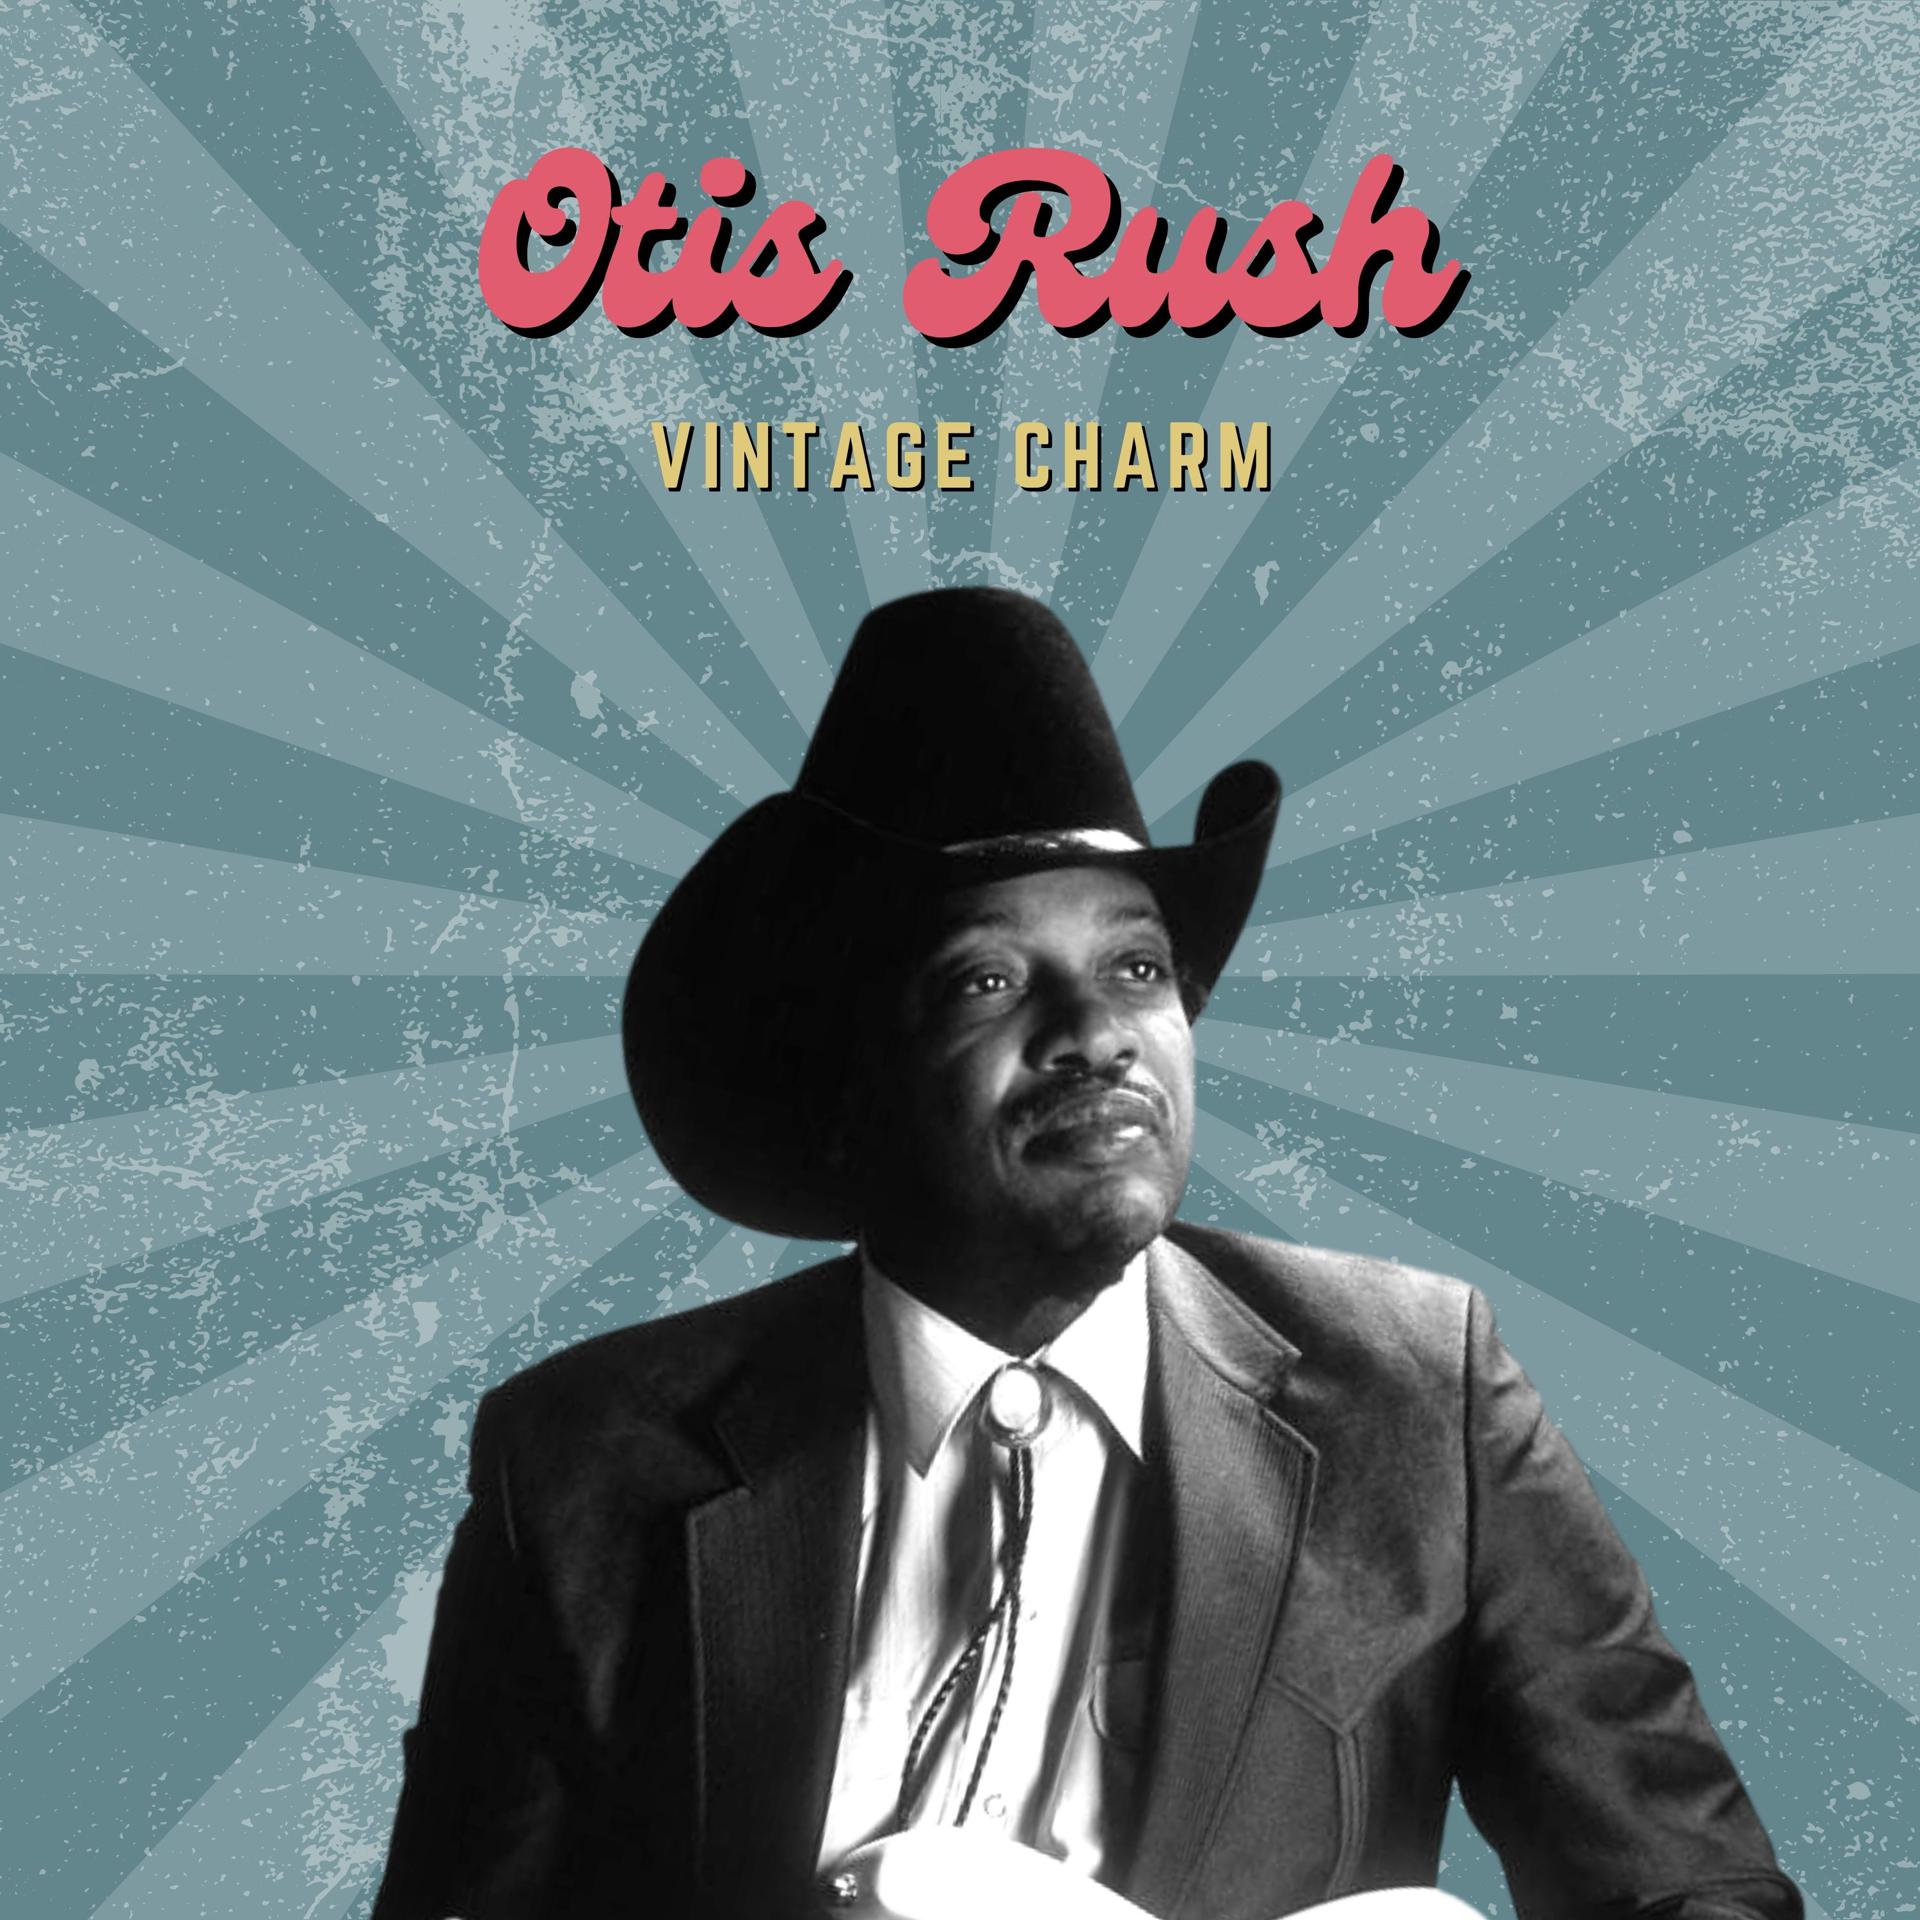 Постер альбома Otis Rush